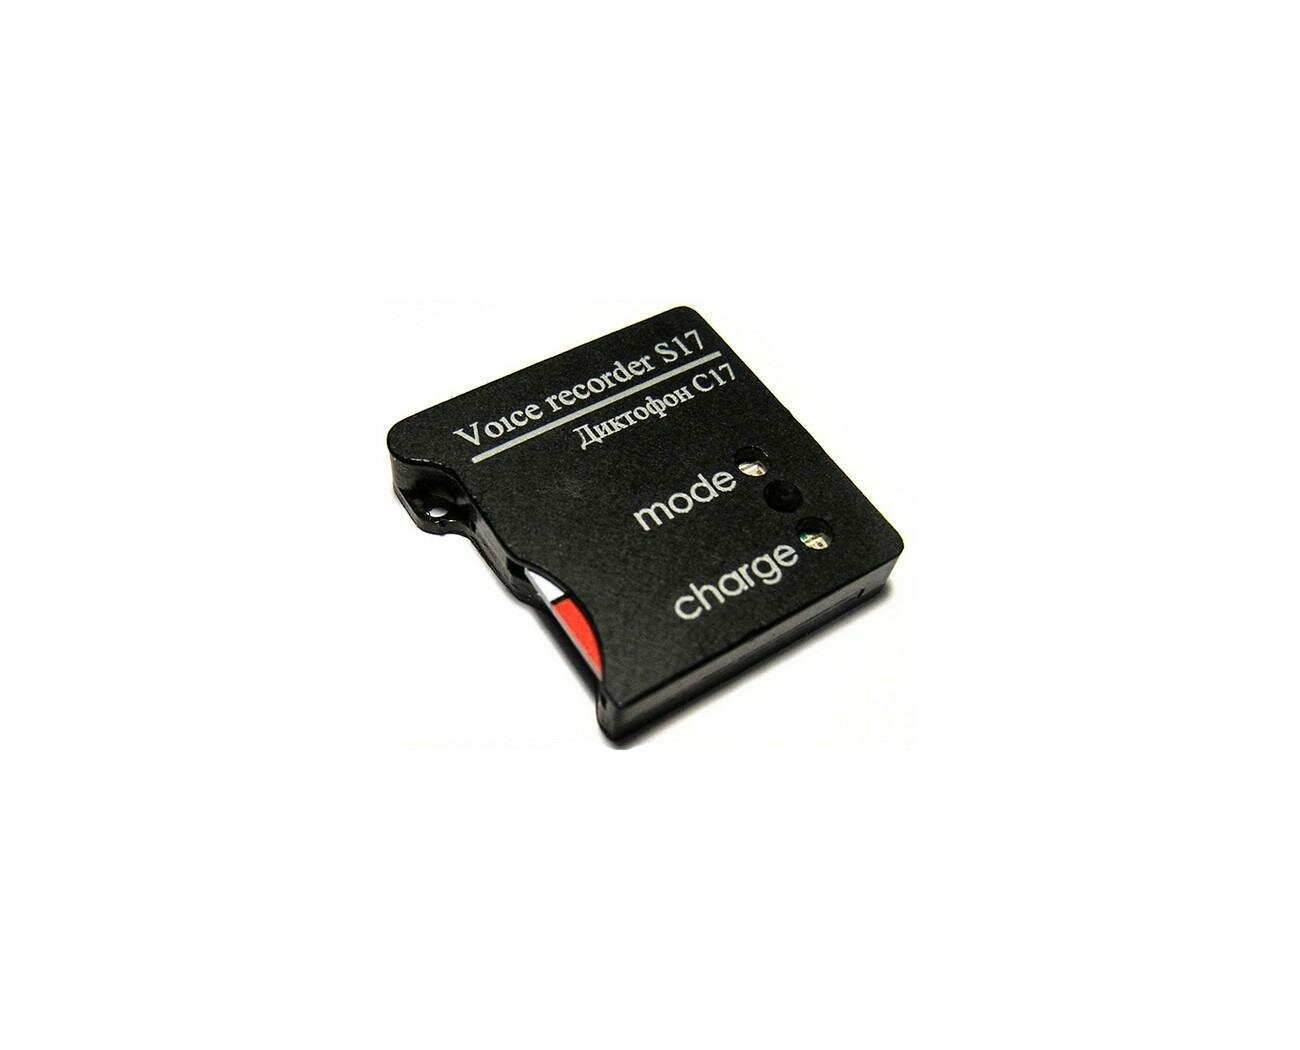 Самый маленький профессиональный диктофон Сорока 17 (W4105RU) + 2 подарка (Power-bank 10000 mAh + SD карта 32ГБ) - запись по расписанию по датчику